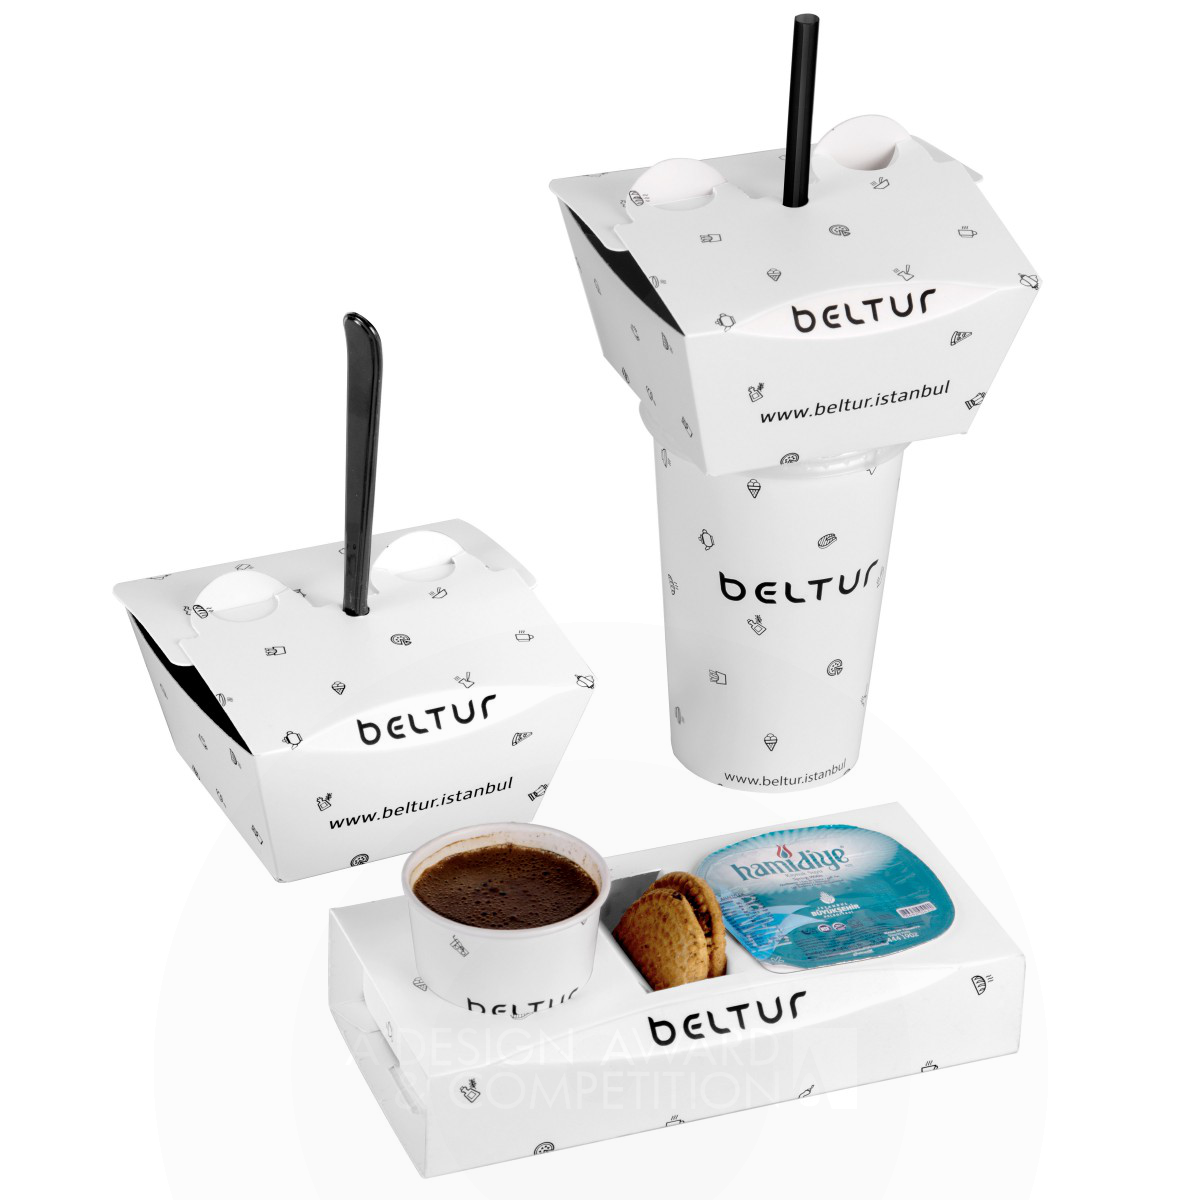 Beltur Go Packaging by Musa Çelik